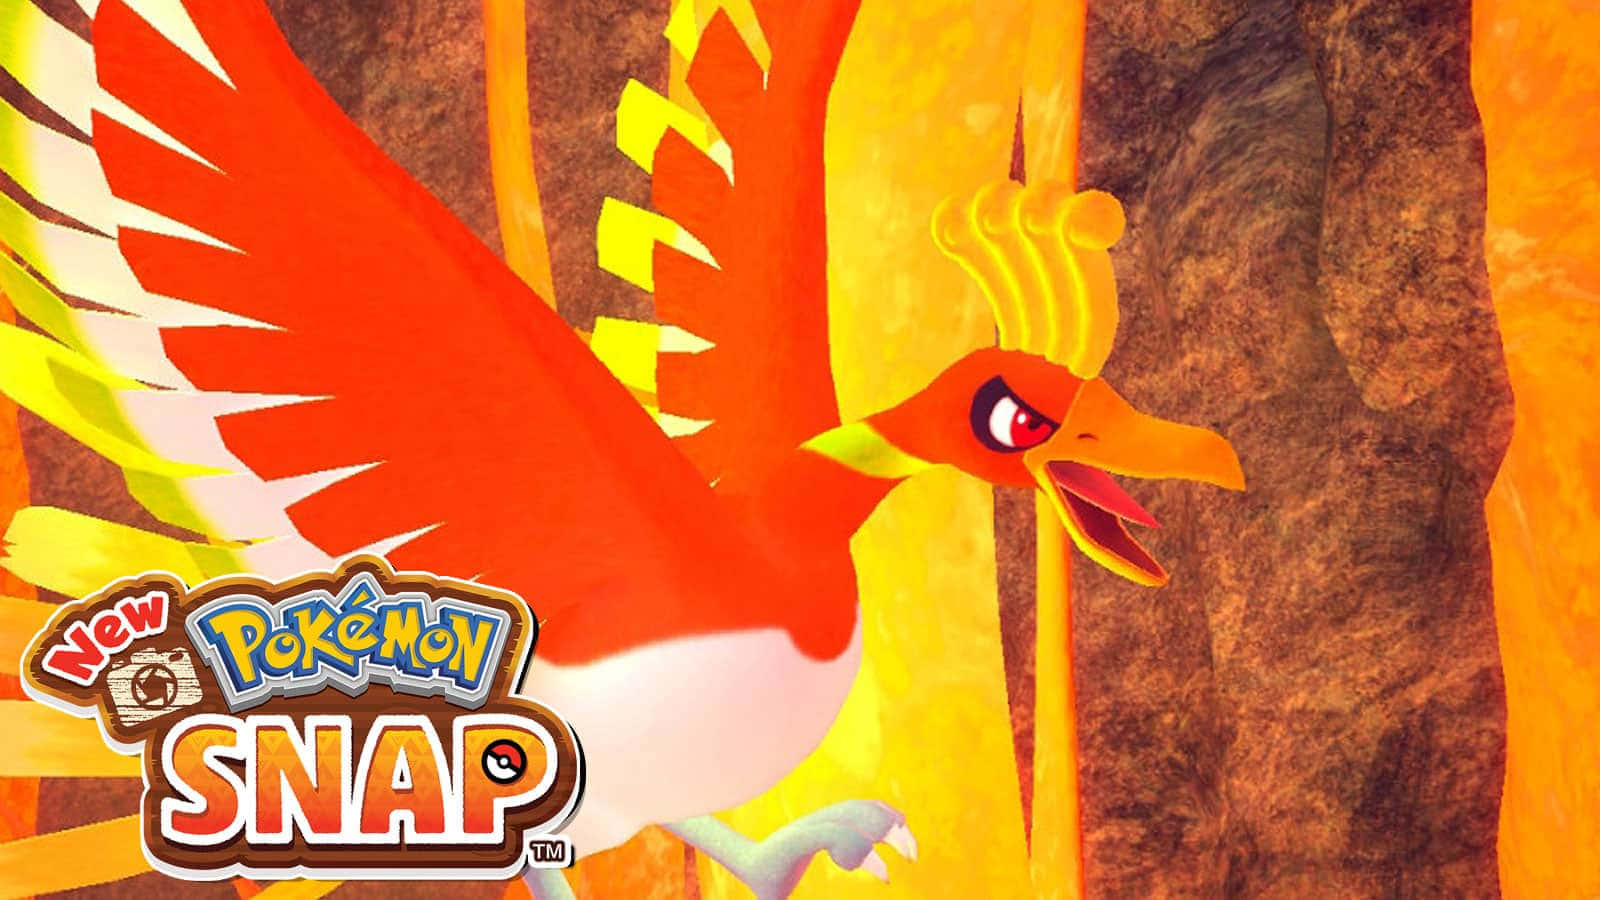 Hooh Neues Pokémon Snap Logo Wallpaper